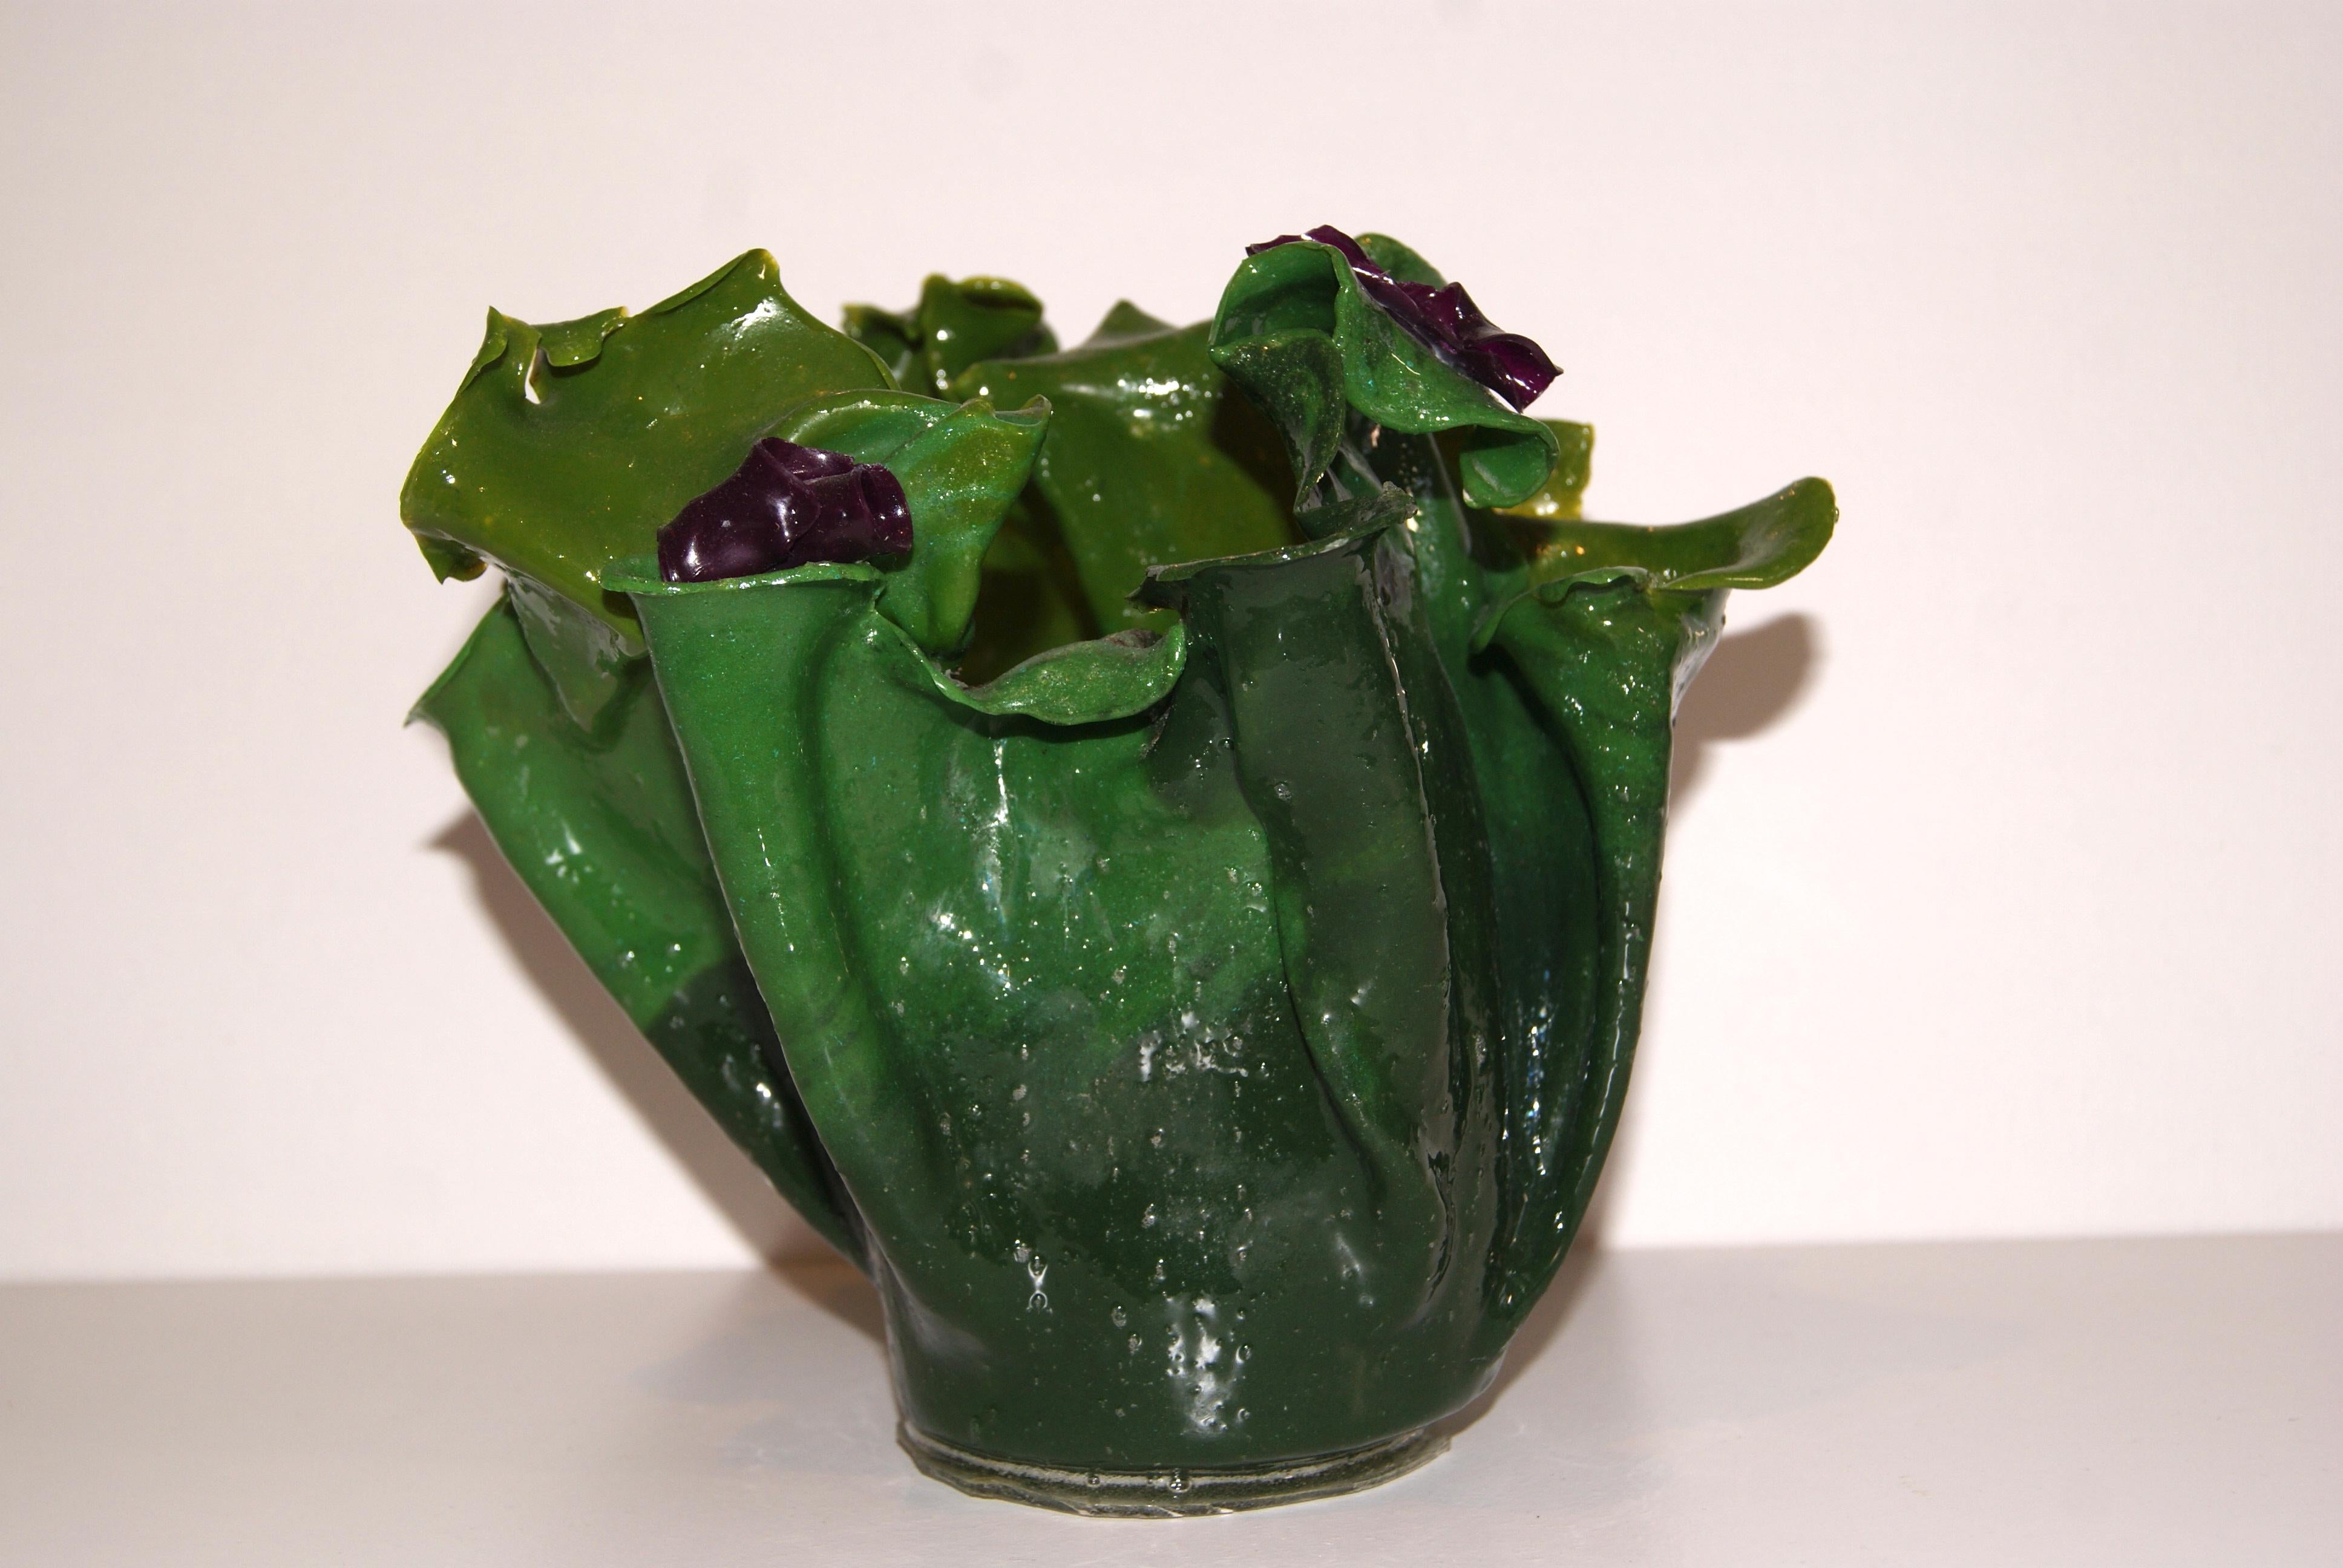 Skulpturale Vase aus Harz in Grüntönen mit lila Akzenten.